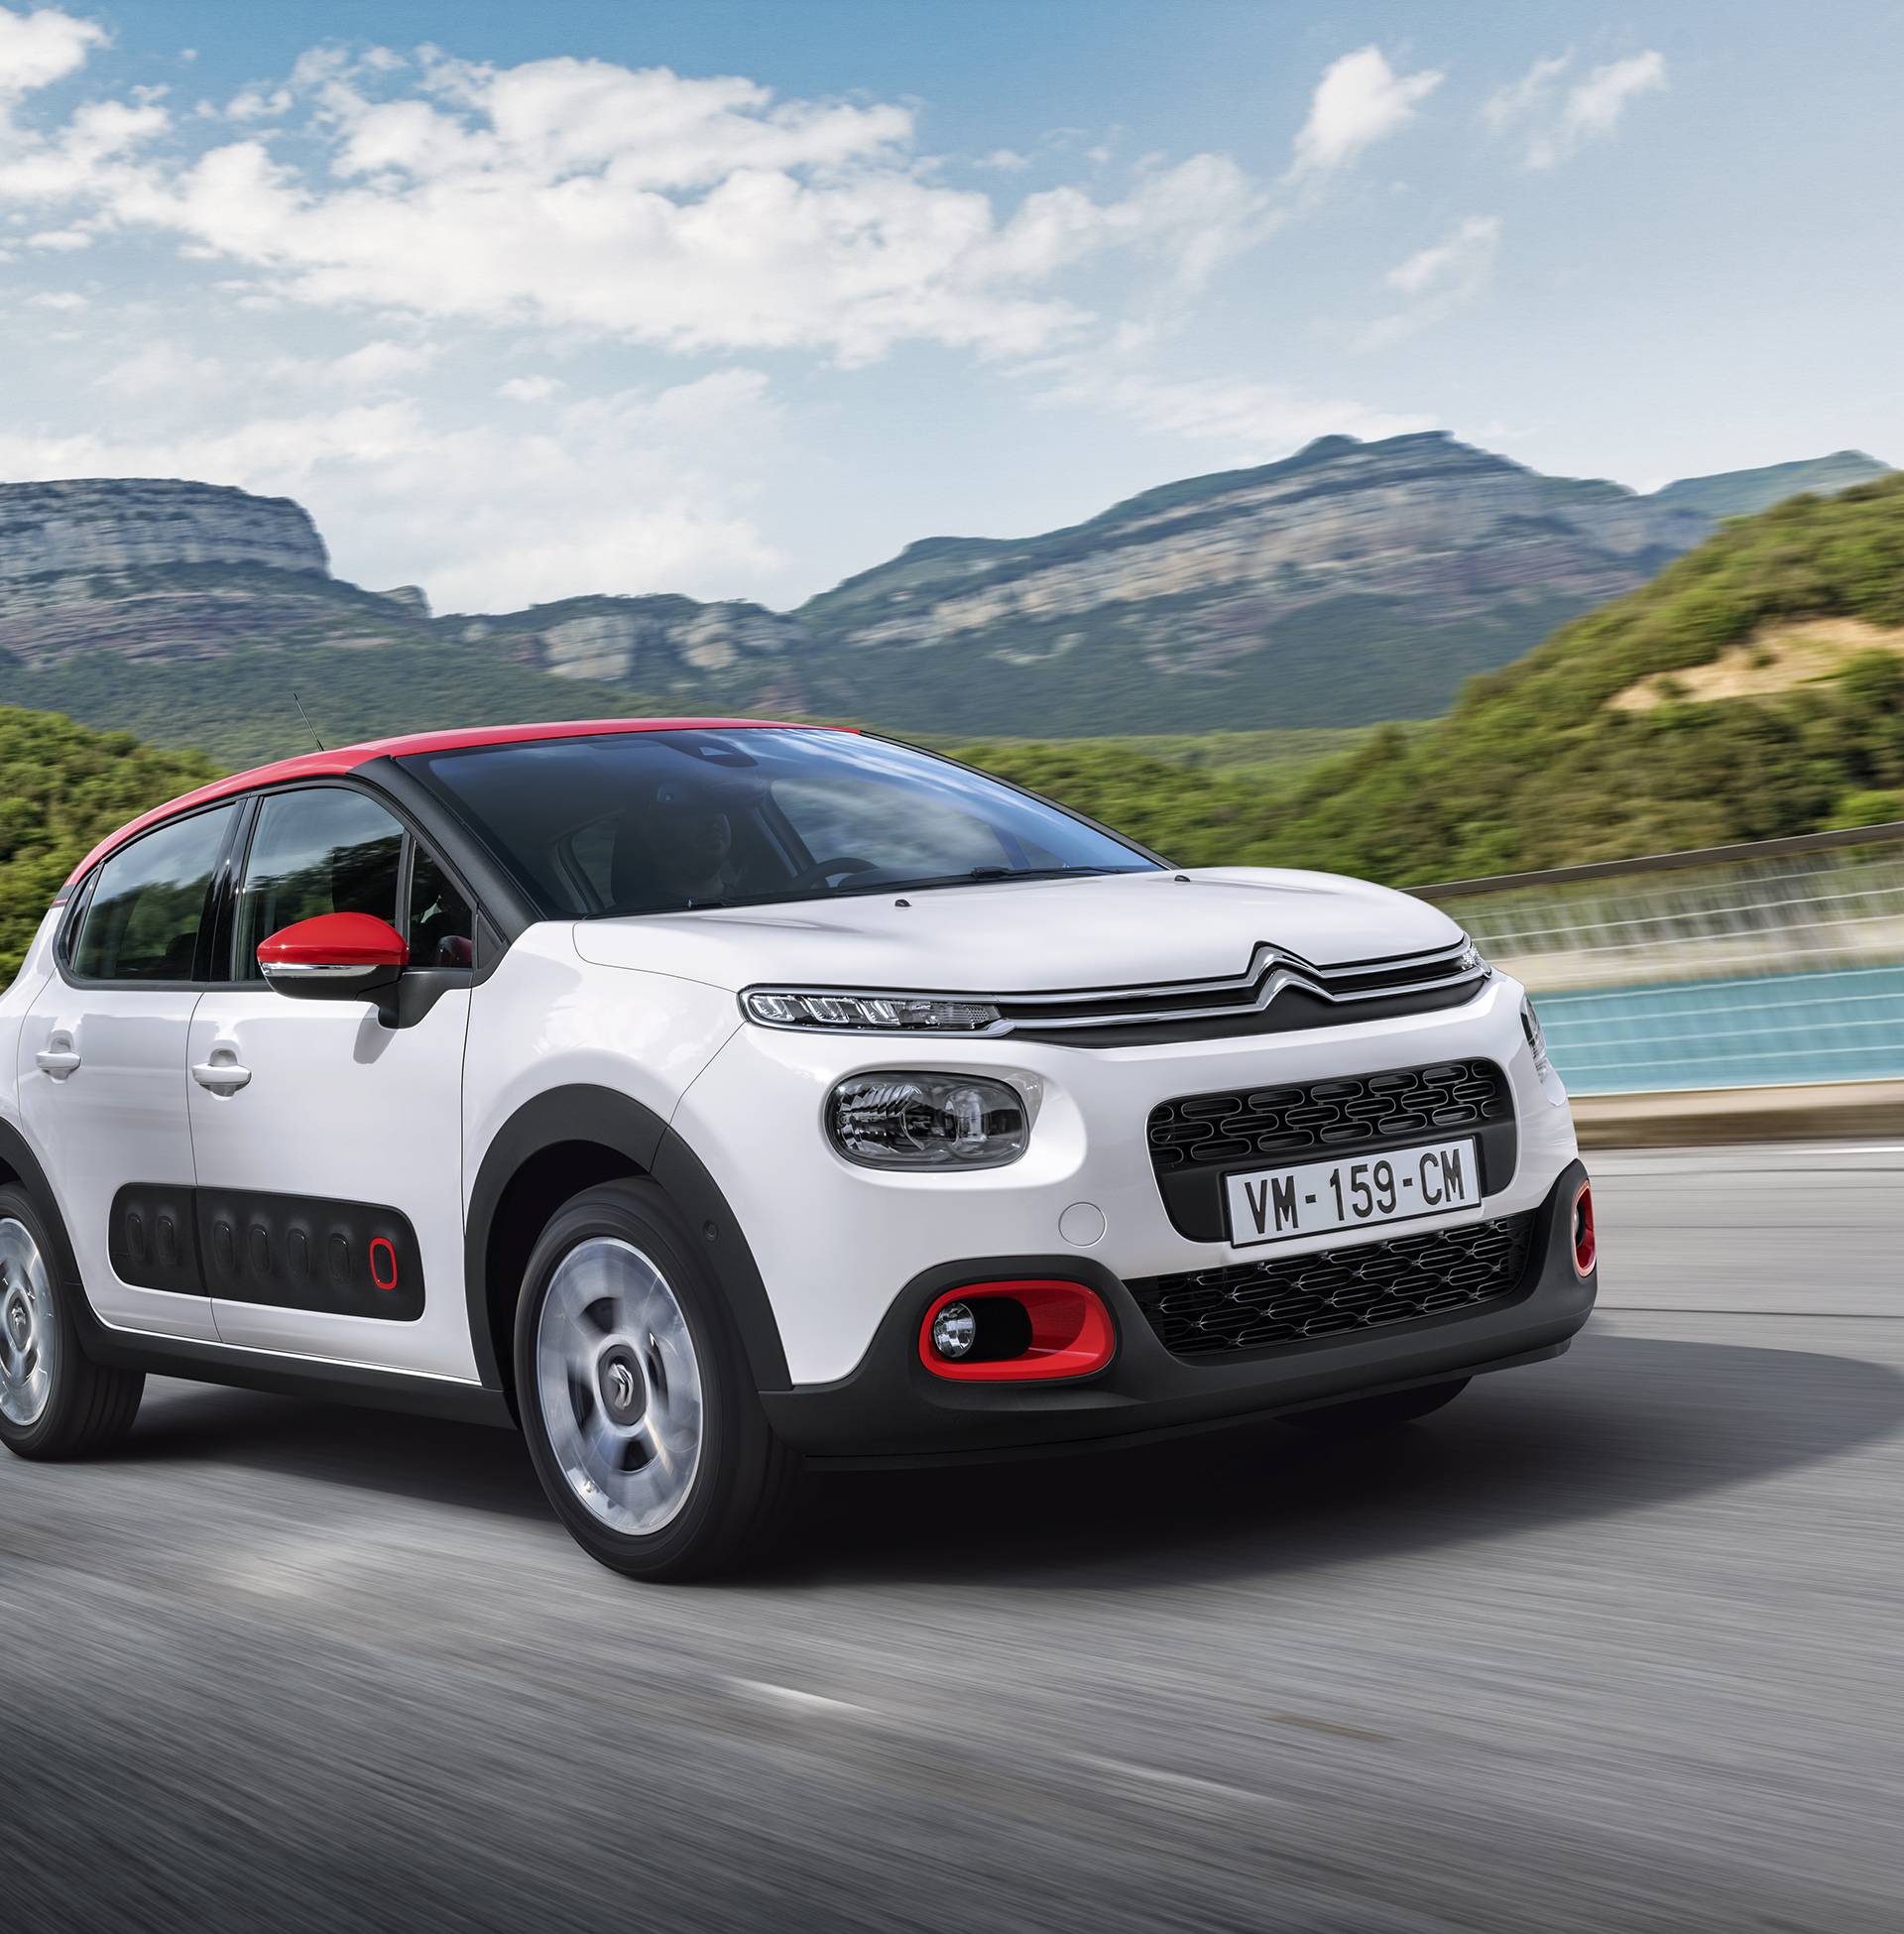 Citroën opet šokira: C3 je auto koji ima dušu i puno osobnosti